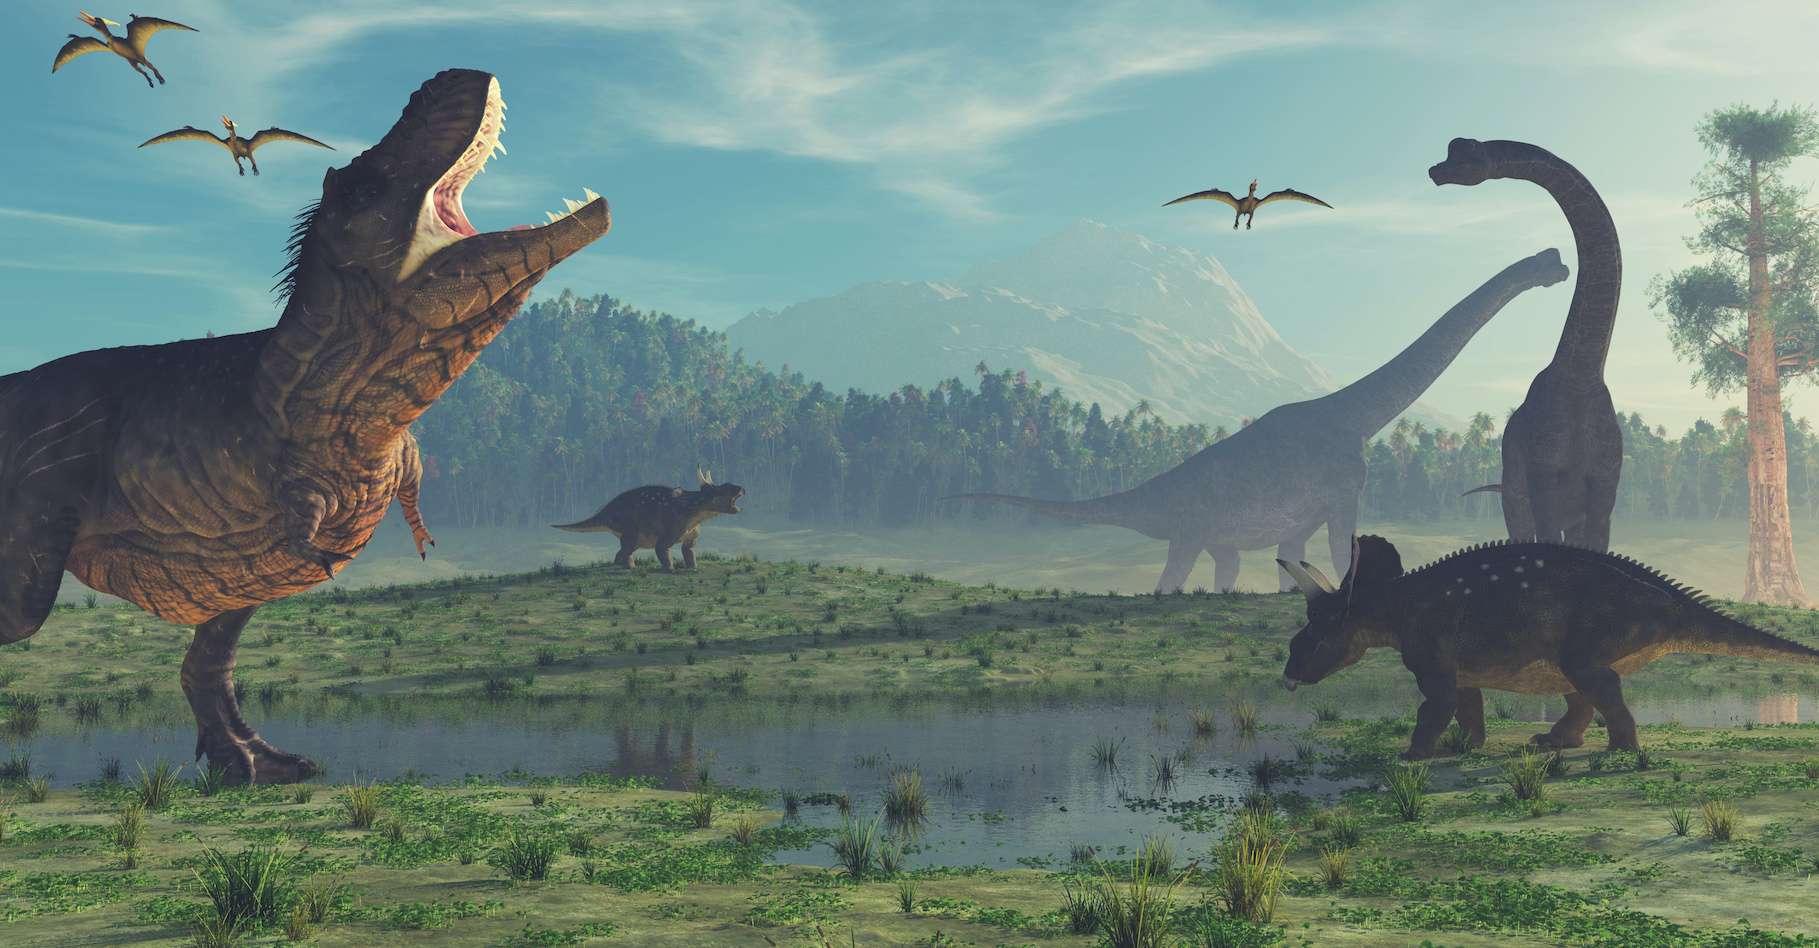 Des centaines d’empreintes de dinosaures découvertes dans ce site exceptionnel